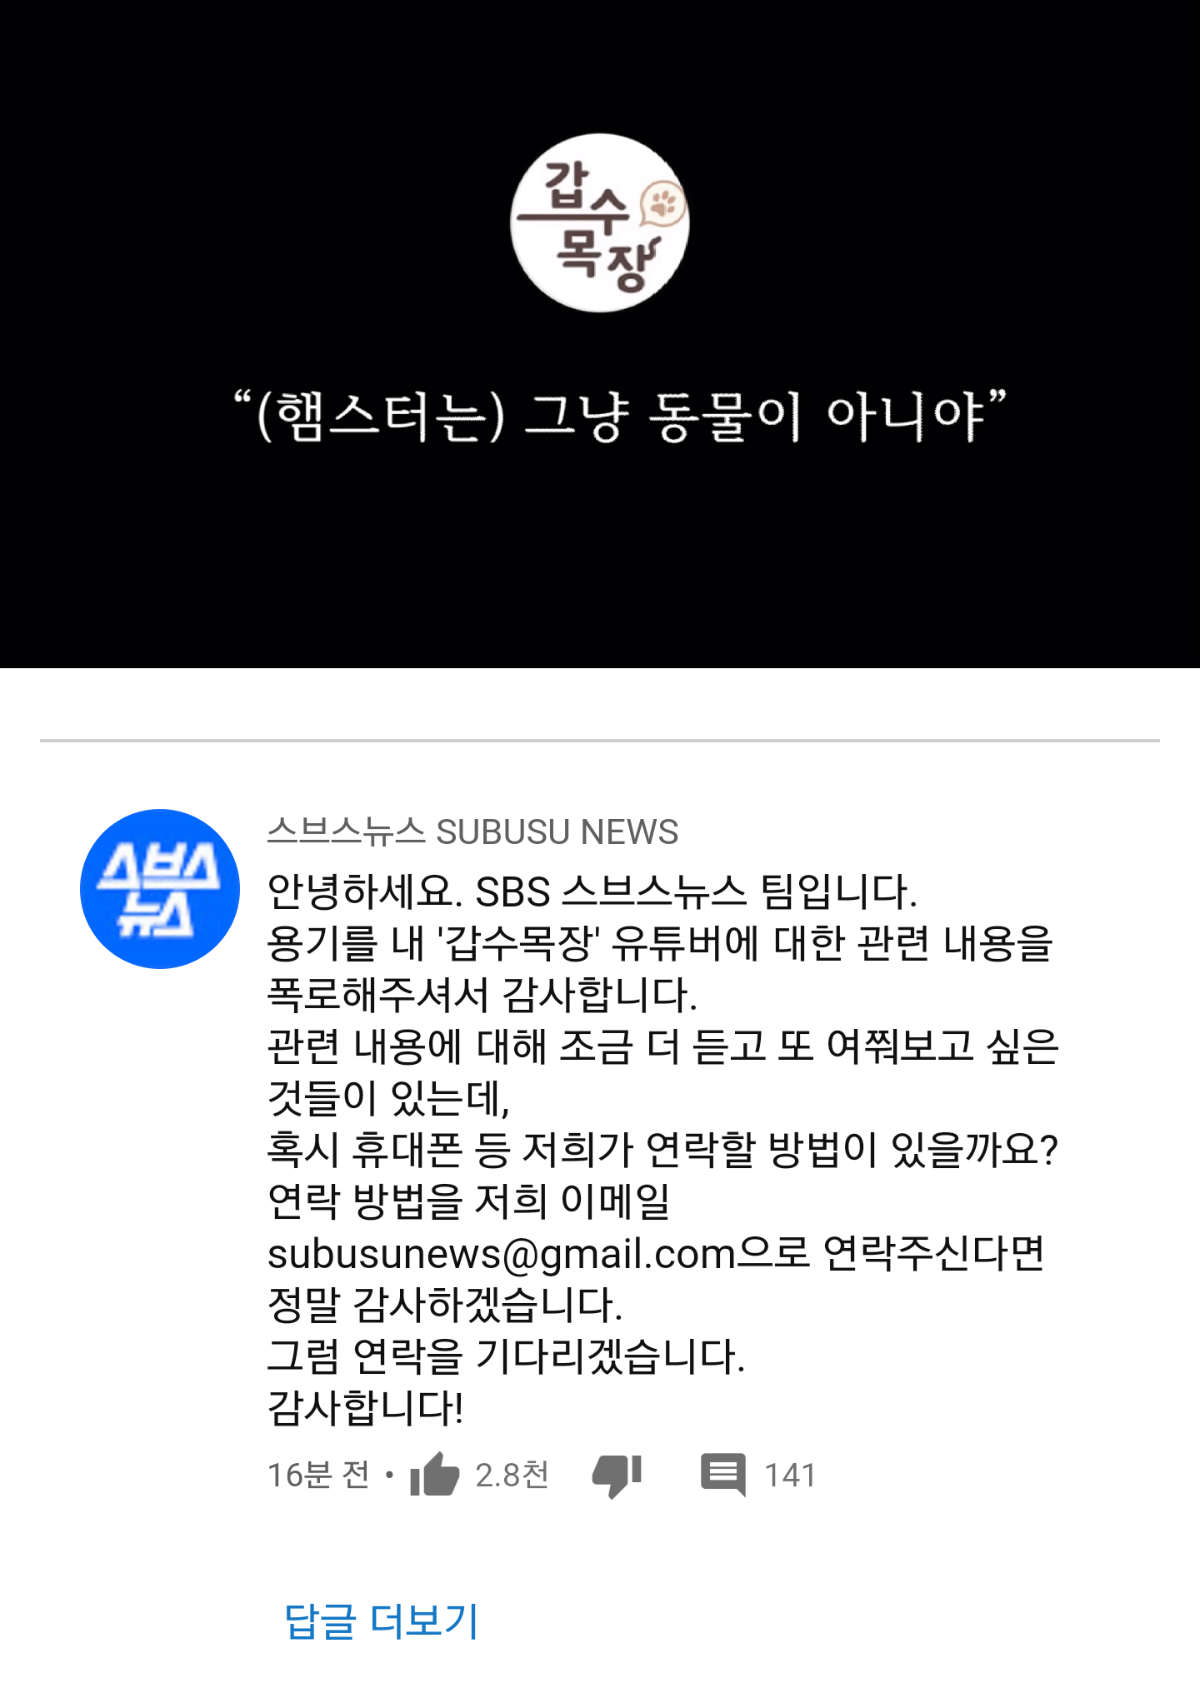 갑수목장 (떡밥문 SBS)